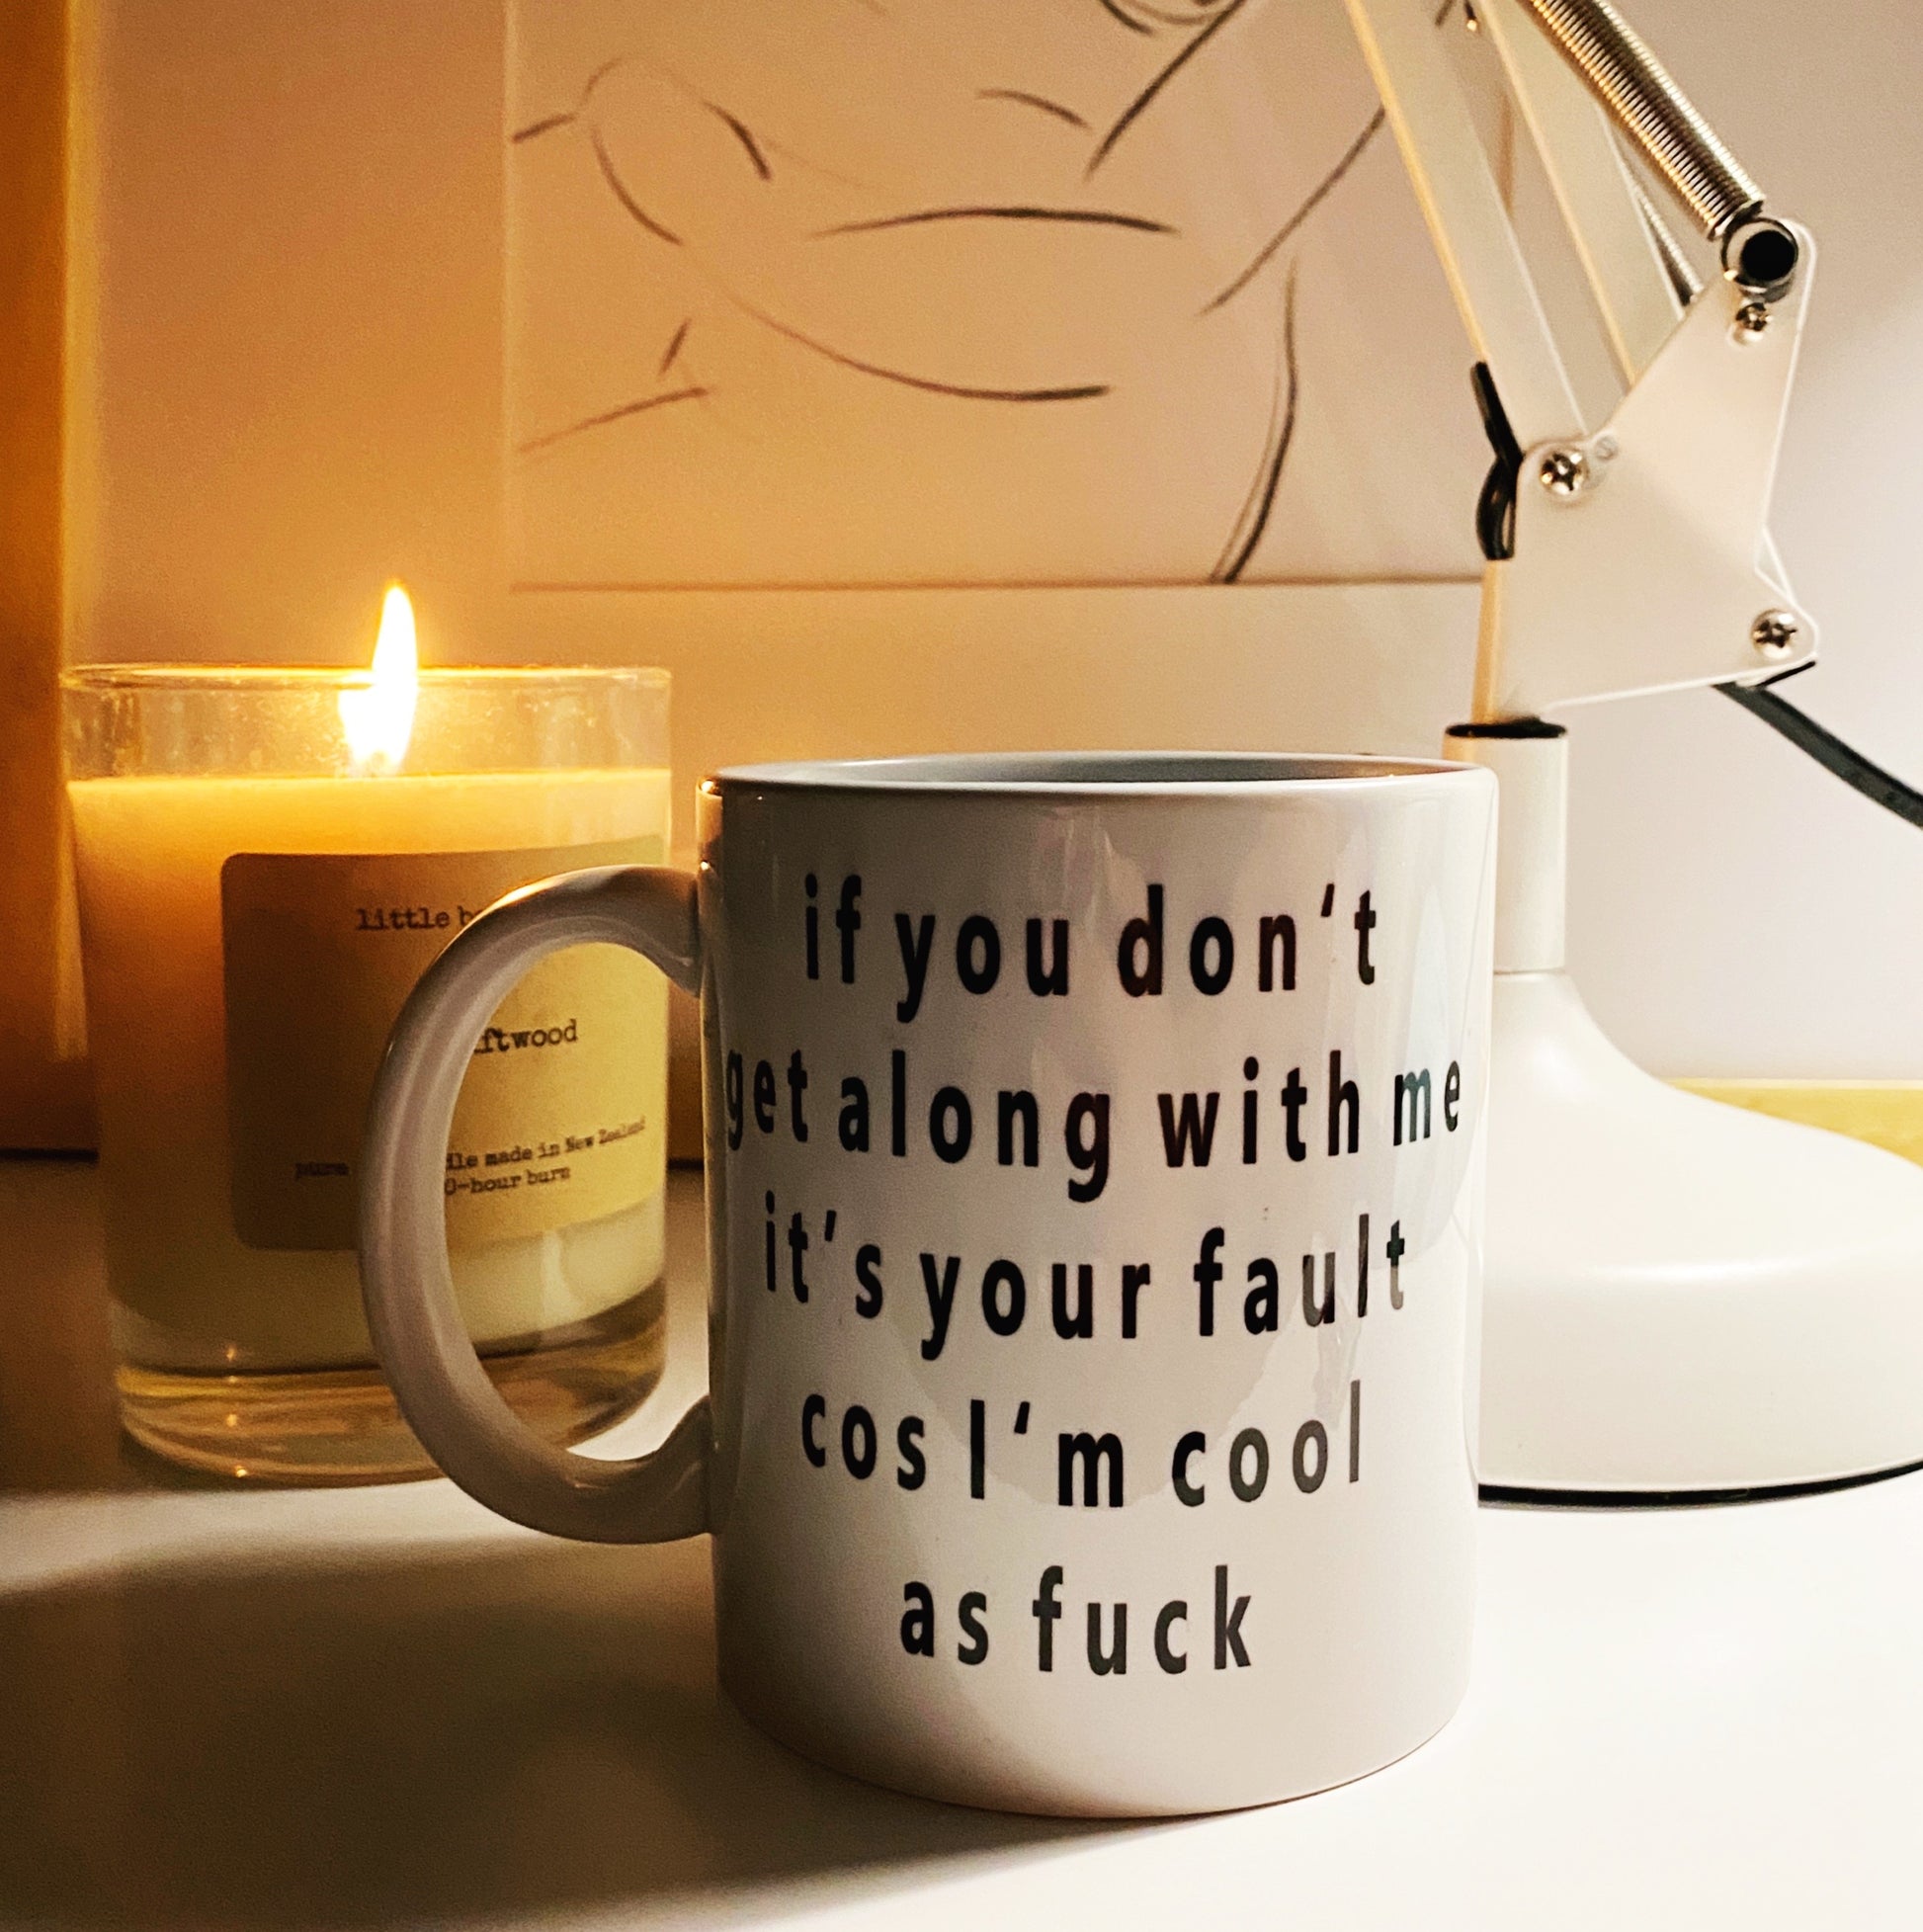 Cool as mug